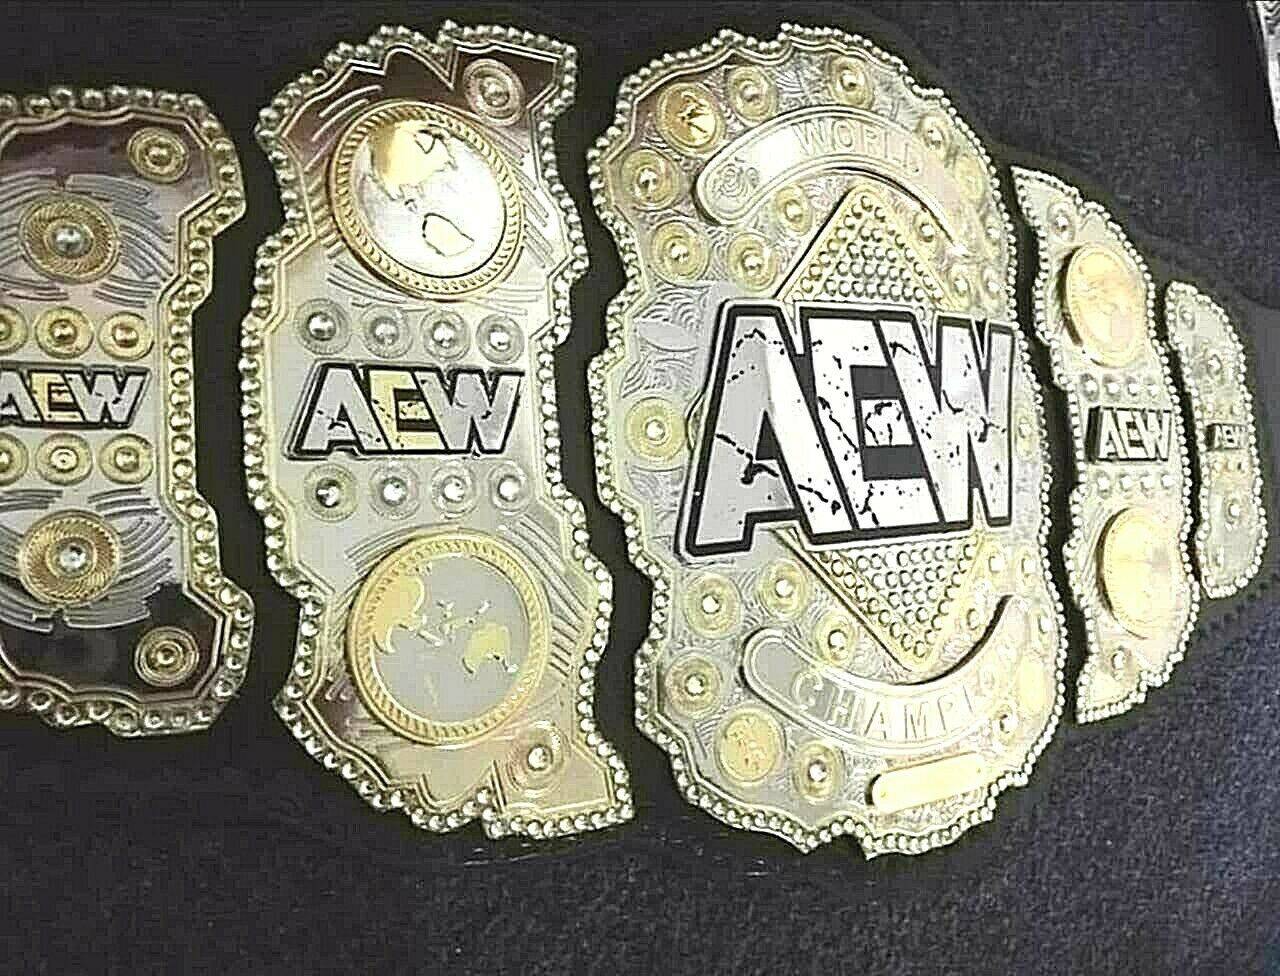 AEW Heavyweight Brass Championship Belt Replica - Zees Belts